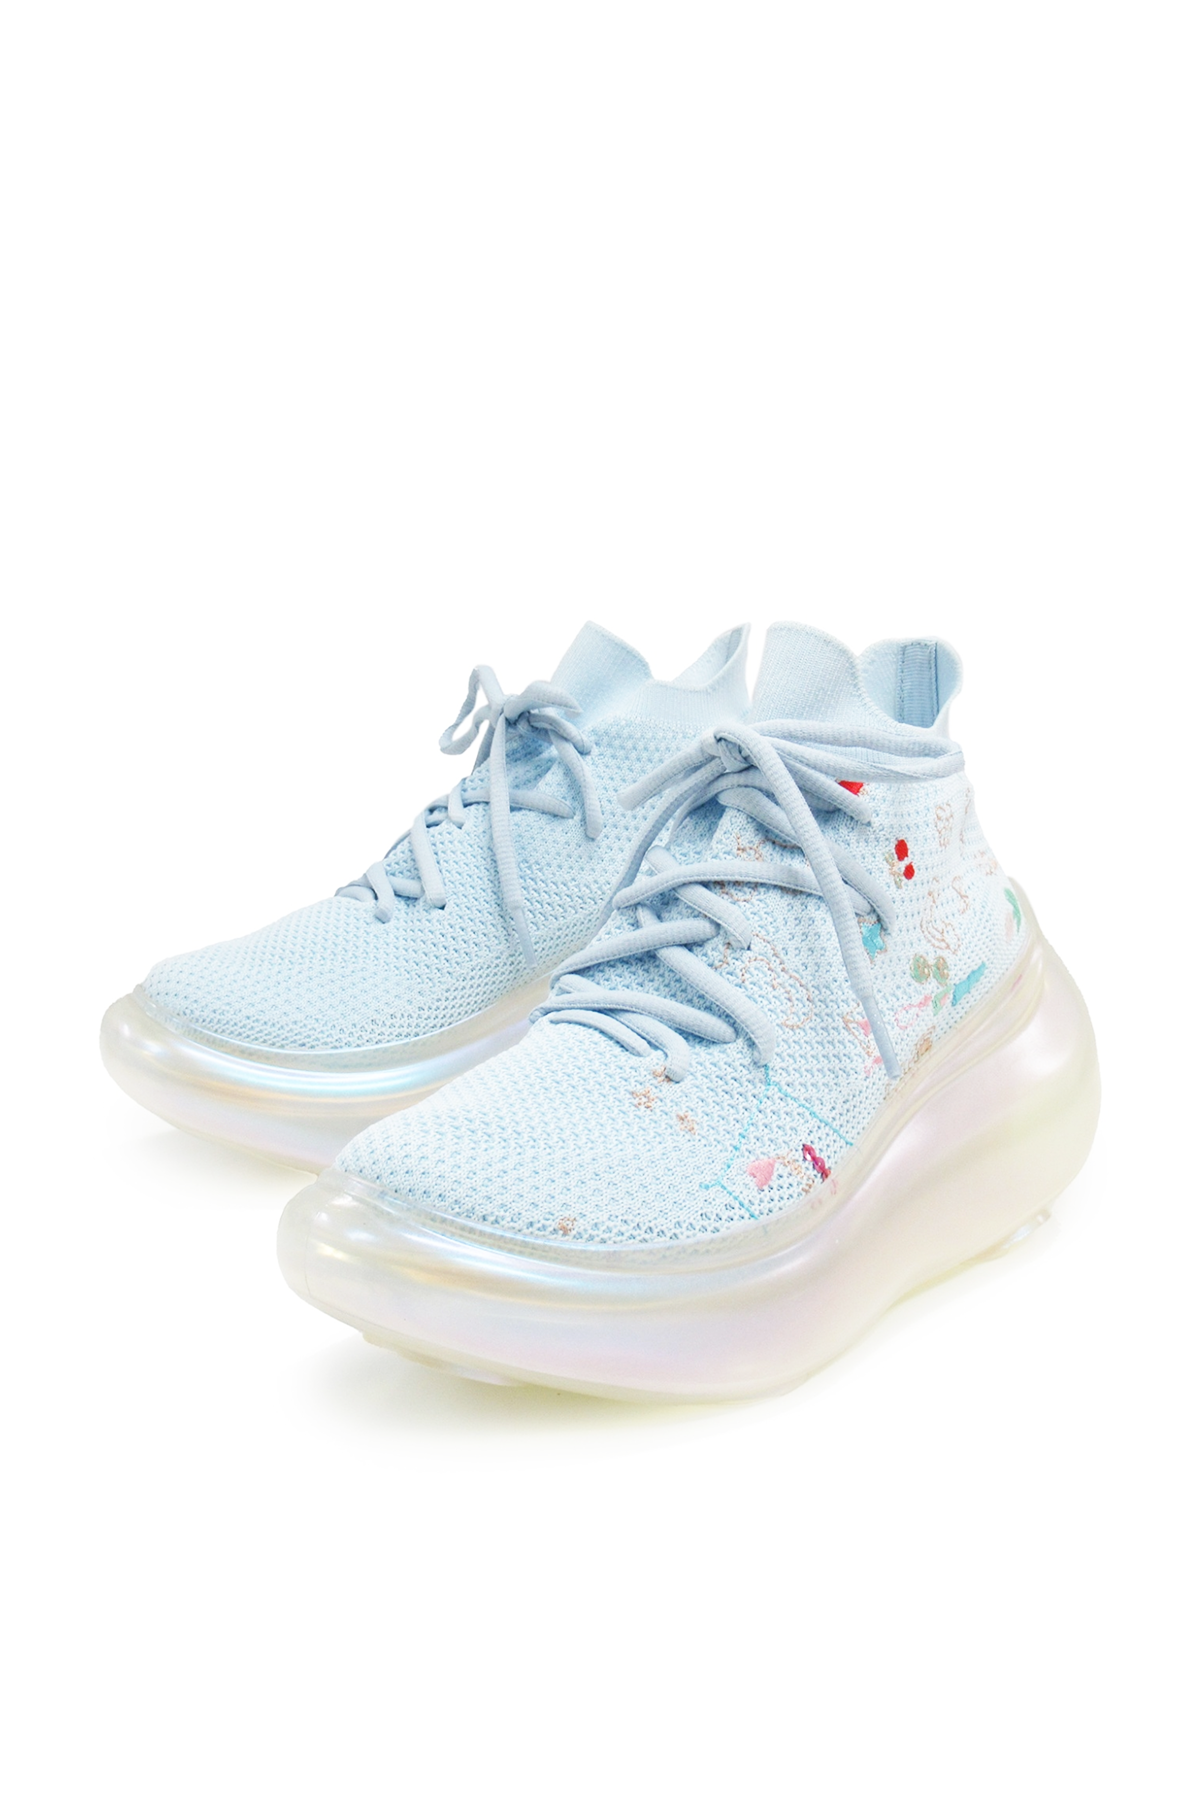 Hana Embroidery Shoes / Aurora Blue